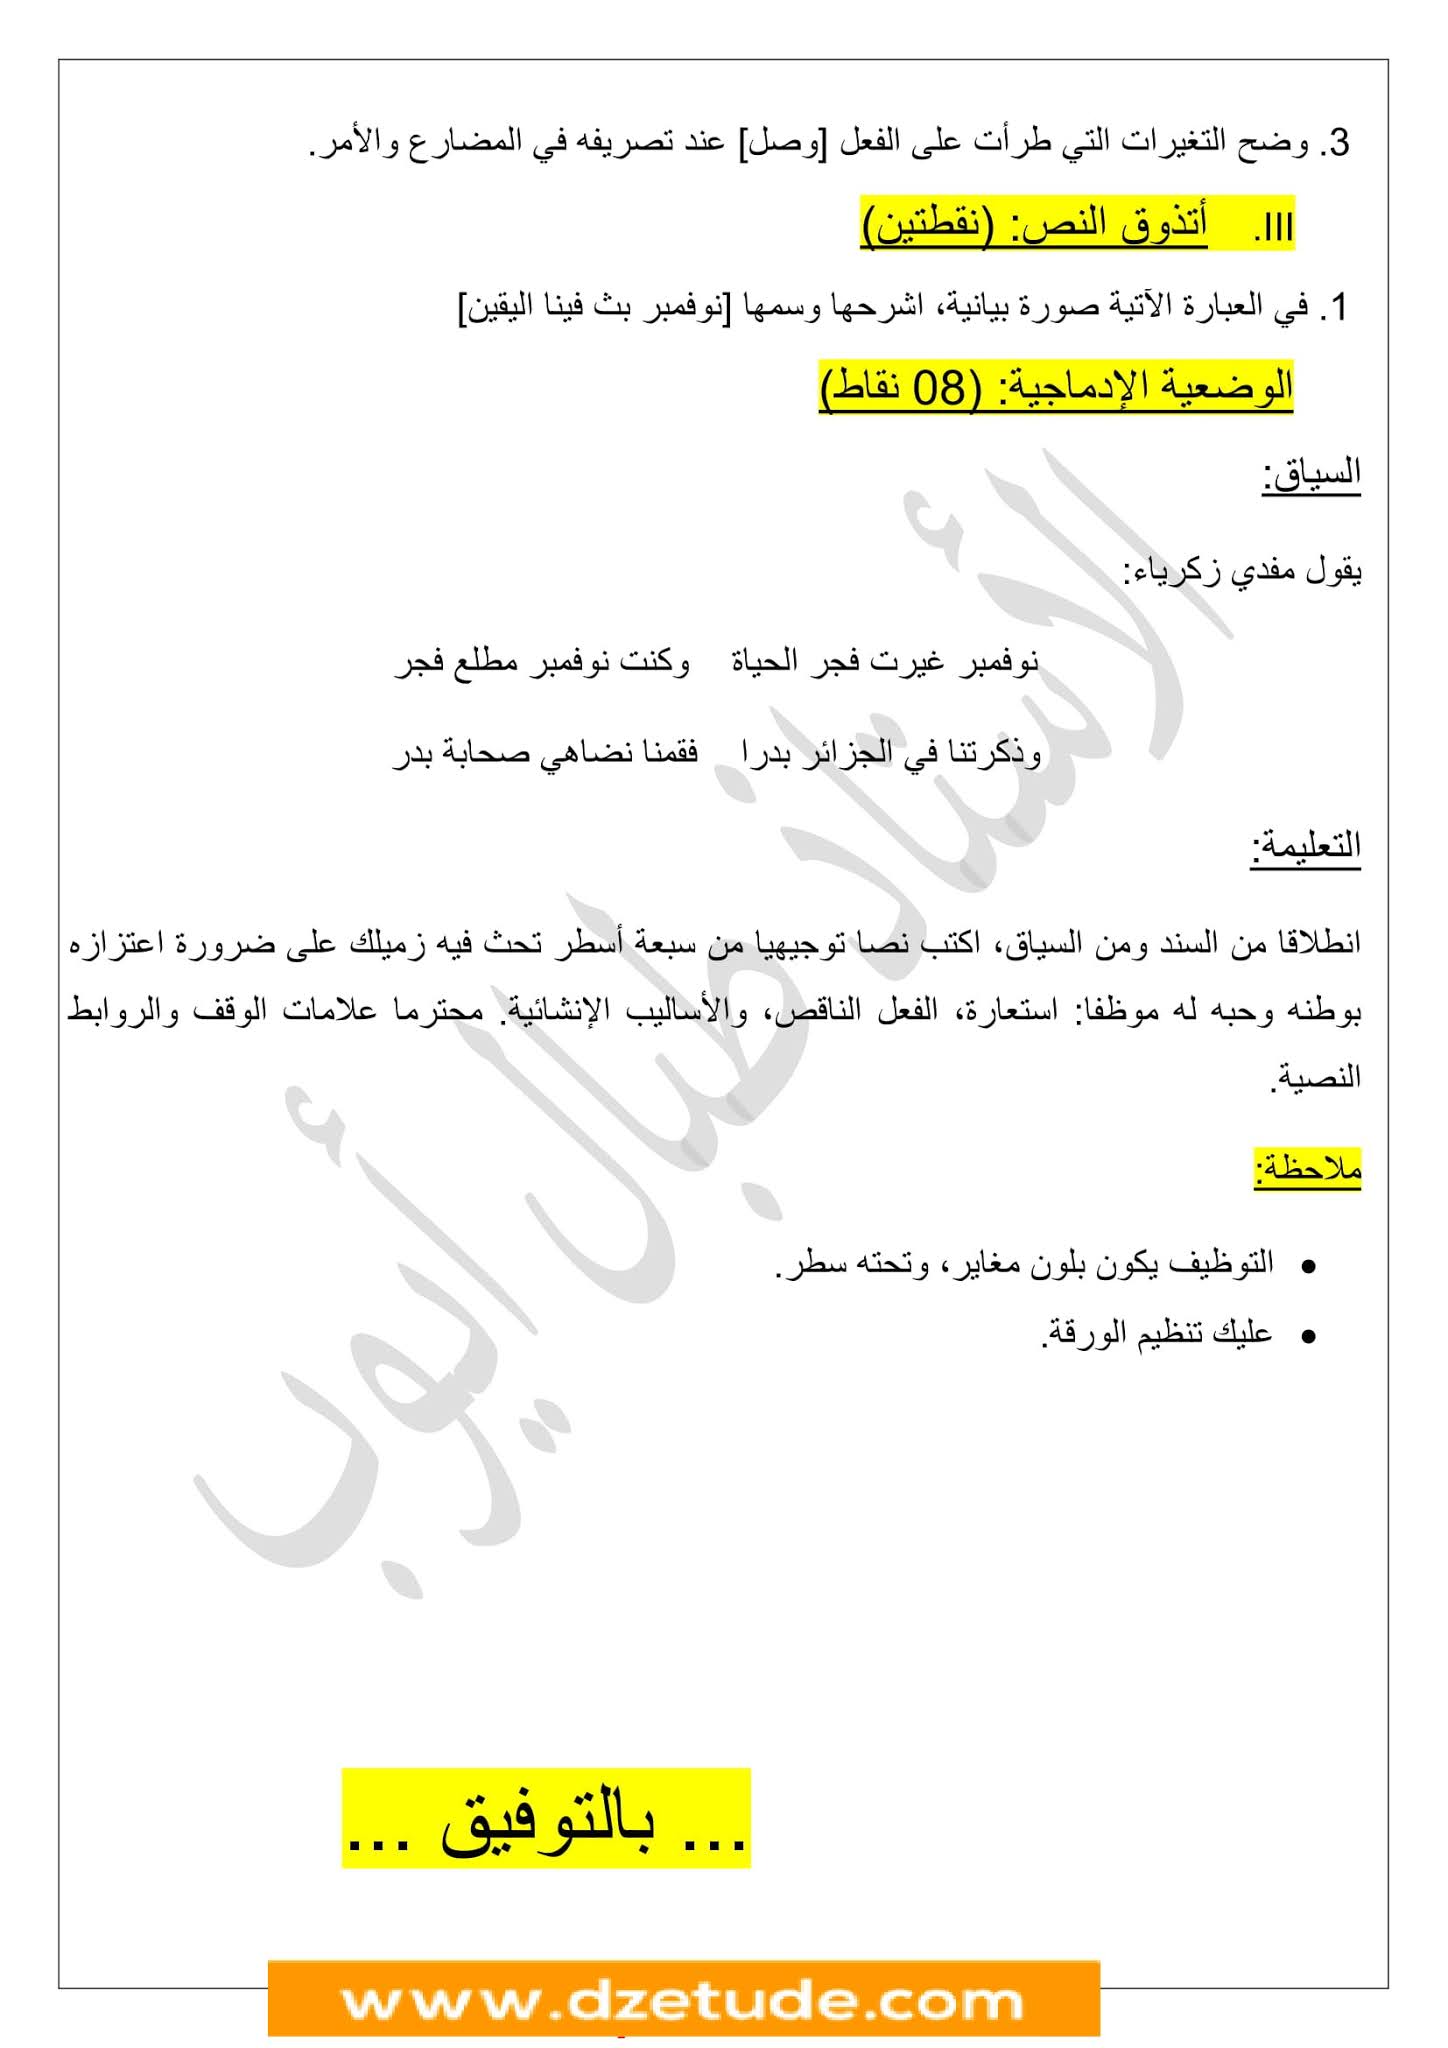 فرض اللغة العربية الفصل الأول للسنة الثانية متوسط - الجيل الثاني نموذج 5